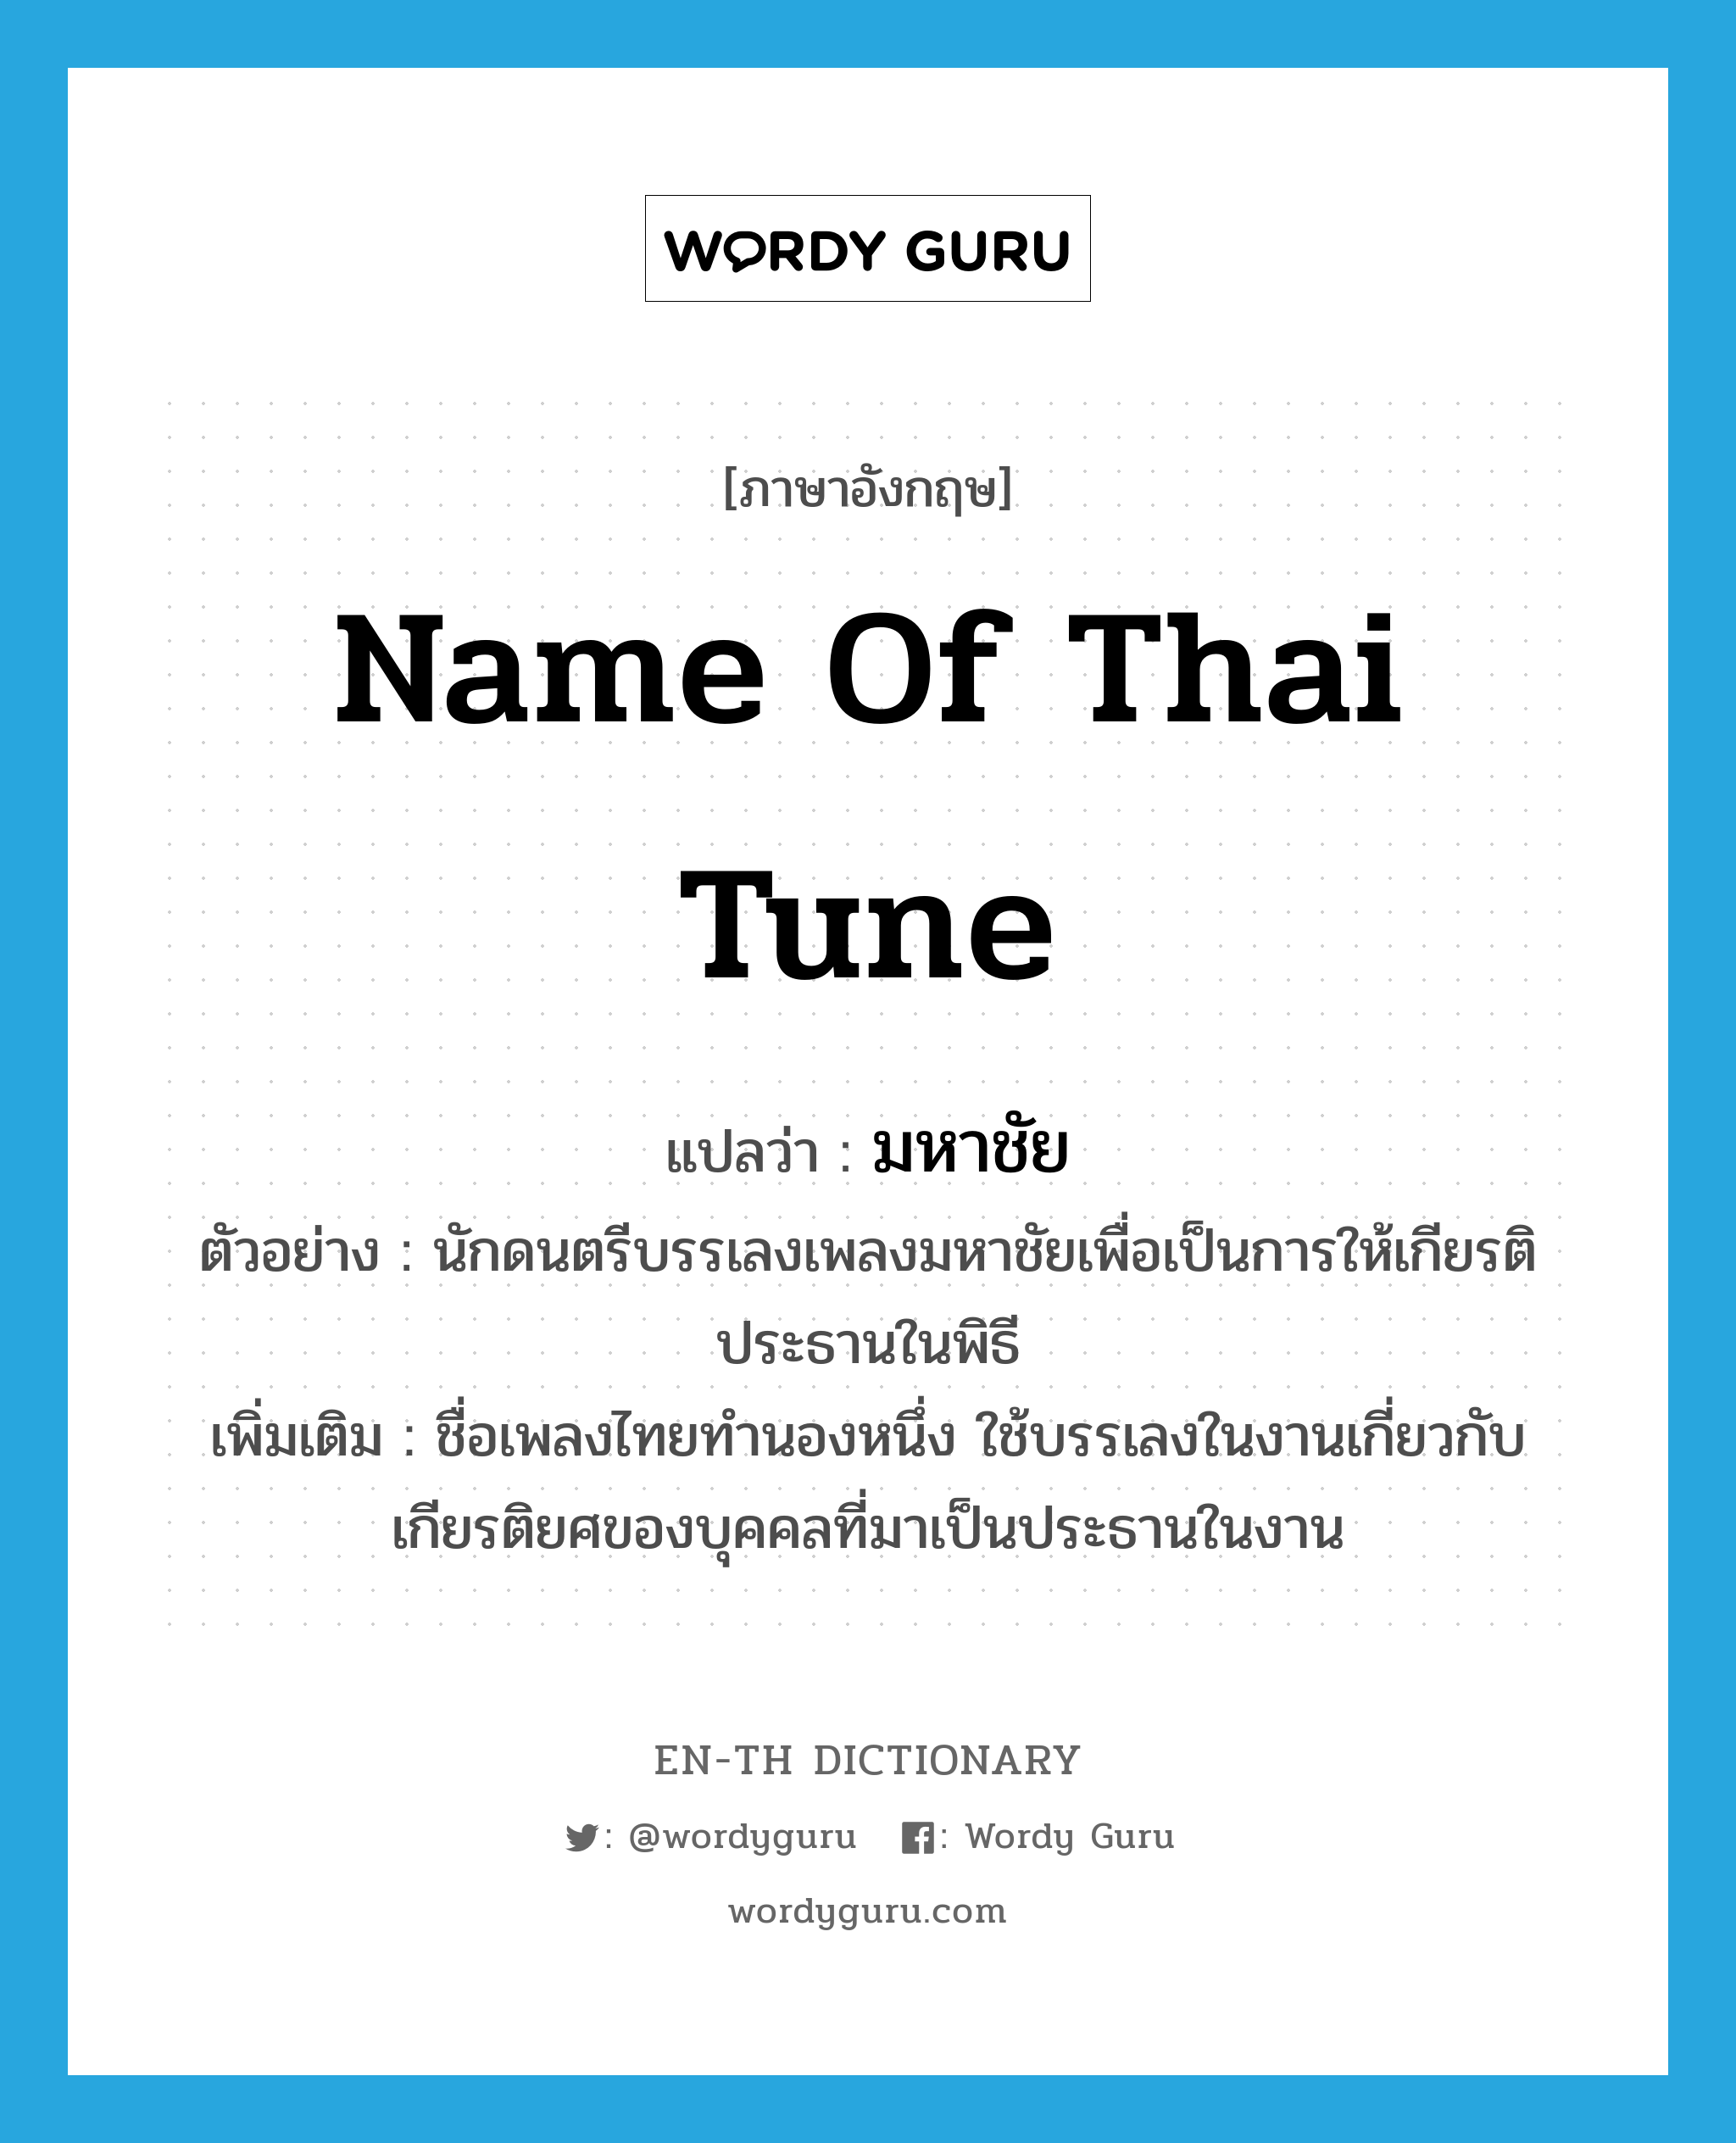 มหาชัย ภาษาอังกฤษ?, คำศัพท์ภาษาอังกฤษ มหาชัย แปลว่า name of Thai tune ประเภท N ตัวอย่าง นักดนตรีบรรเลงเพลงมหาชัยเพื่อเป็นการให้เกียรติประธานในพิธี เพิ่มเติม ชื่อเพลงไทยทำนองหนึ่ง ใช้บรรเลงในงานเกี่ยวกับเกียรติยศของบุคคลที่มาเป็นประธานในงาน หมวด N